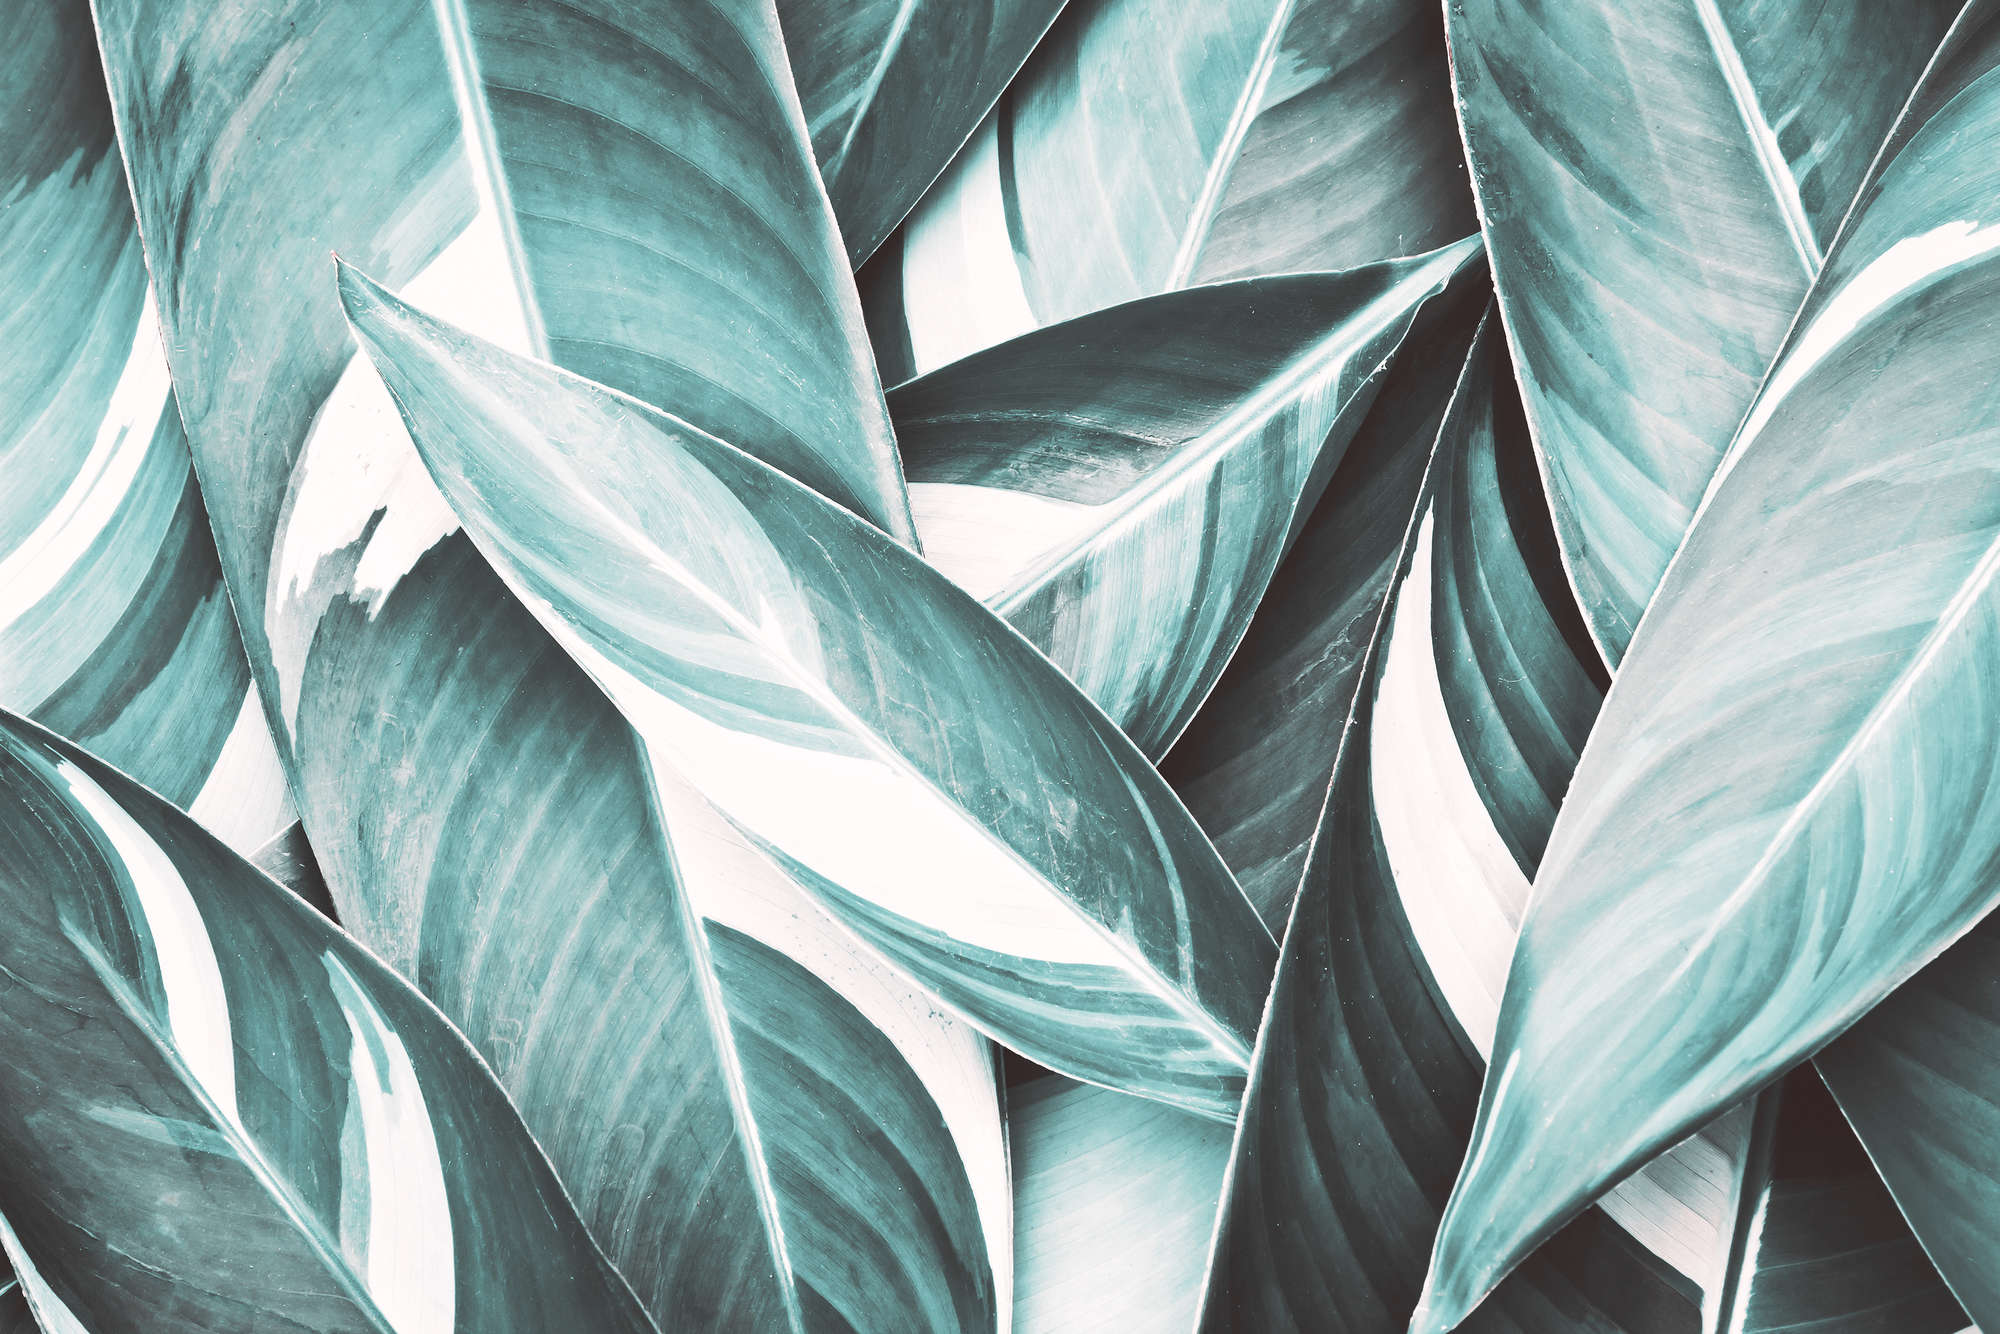             Nature Papier peint feuilles de palmier motif gris sur intissé lisse mat
        